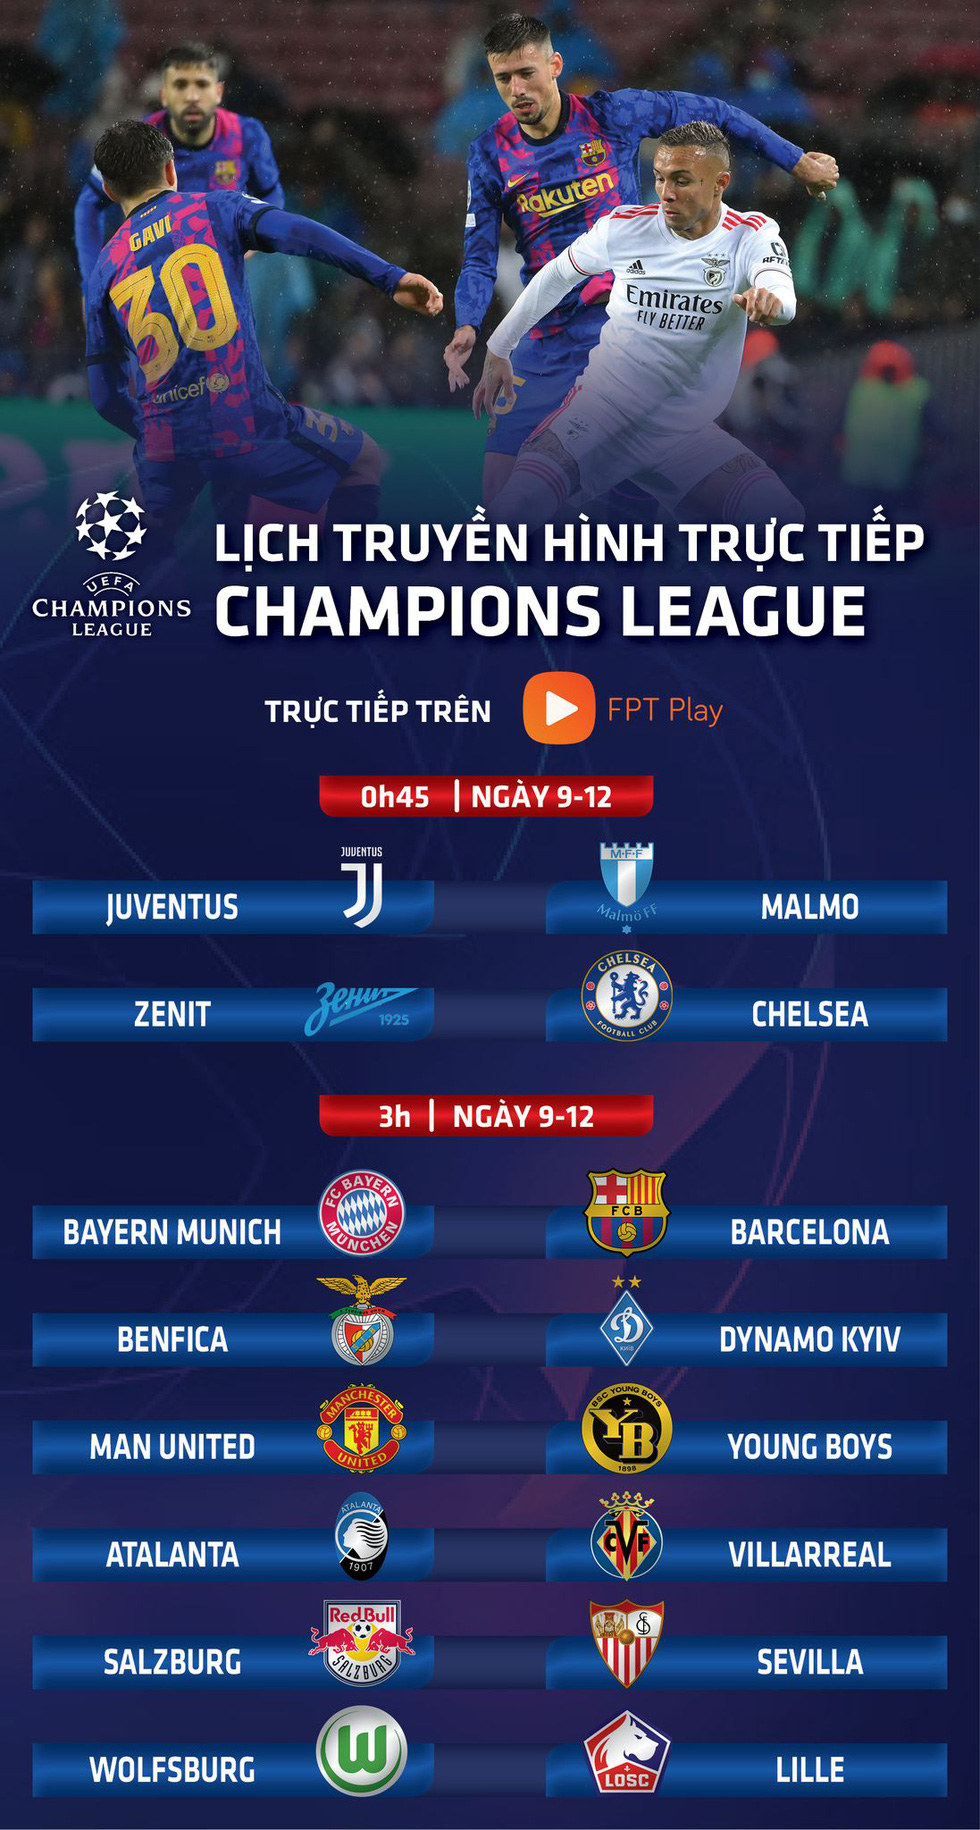 Lịch trực tiếp Champions League 9-12: Tâm điểm Bayern - Barca, Chelsea, Man United thi đấu - Ảnh 1.